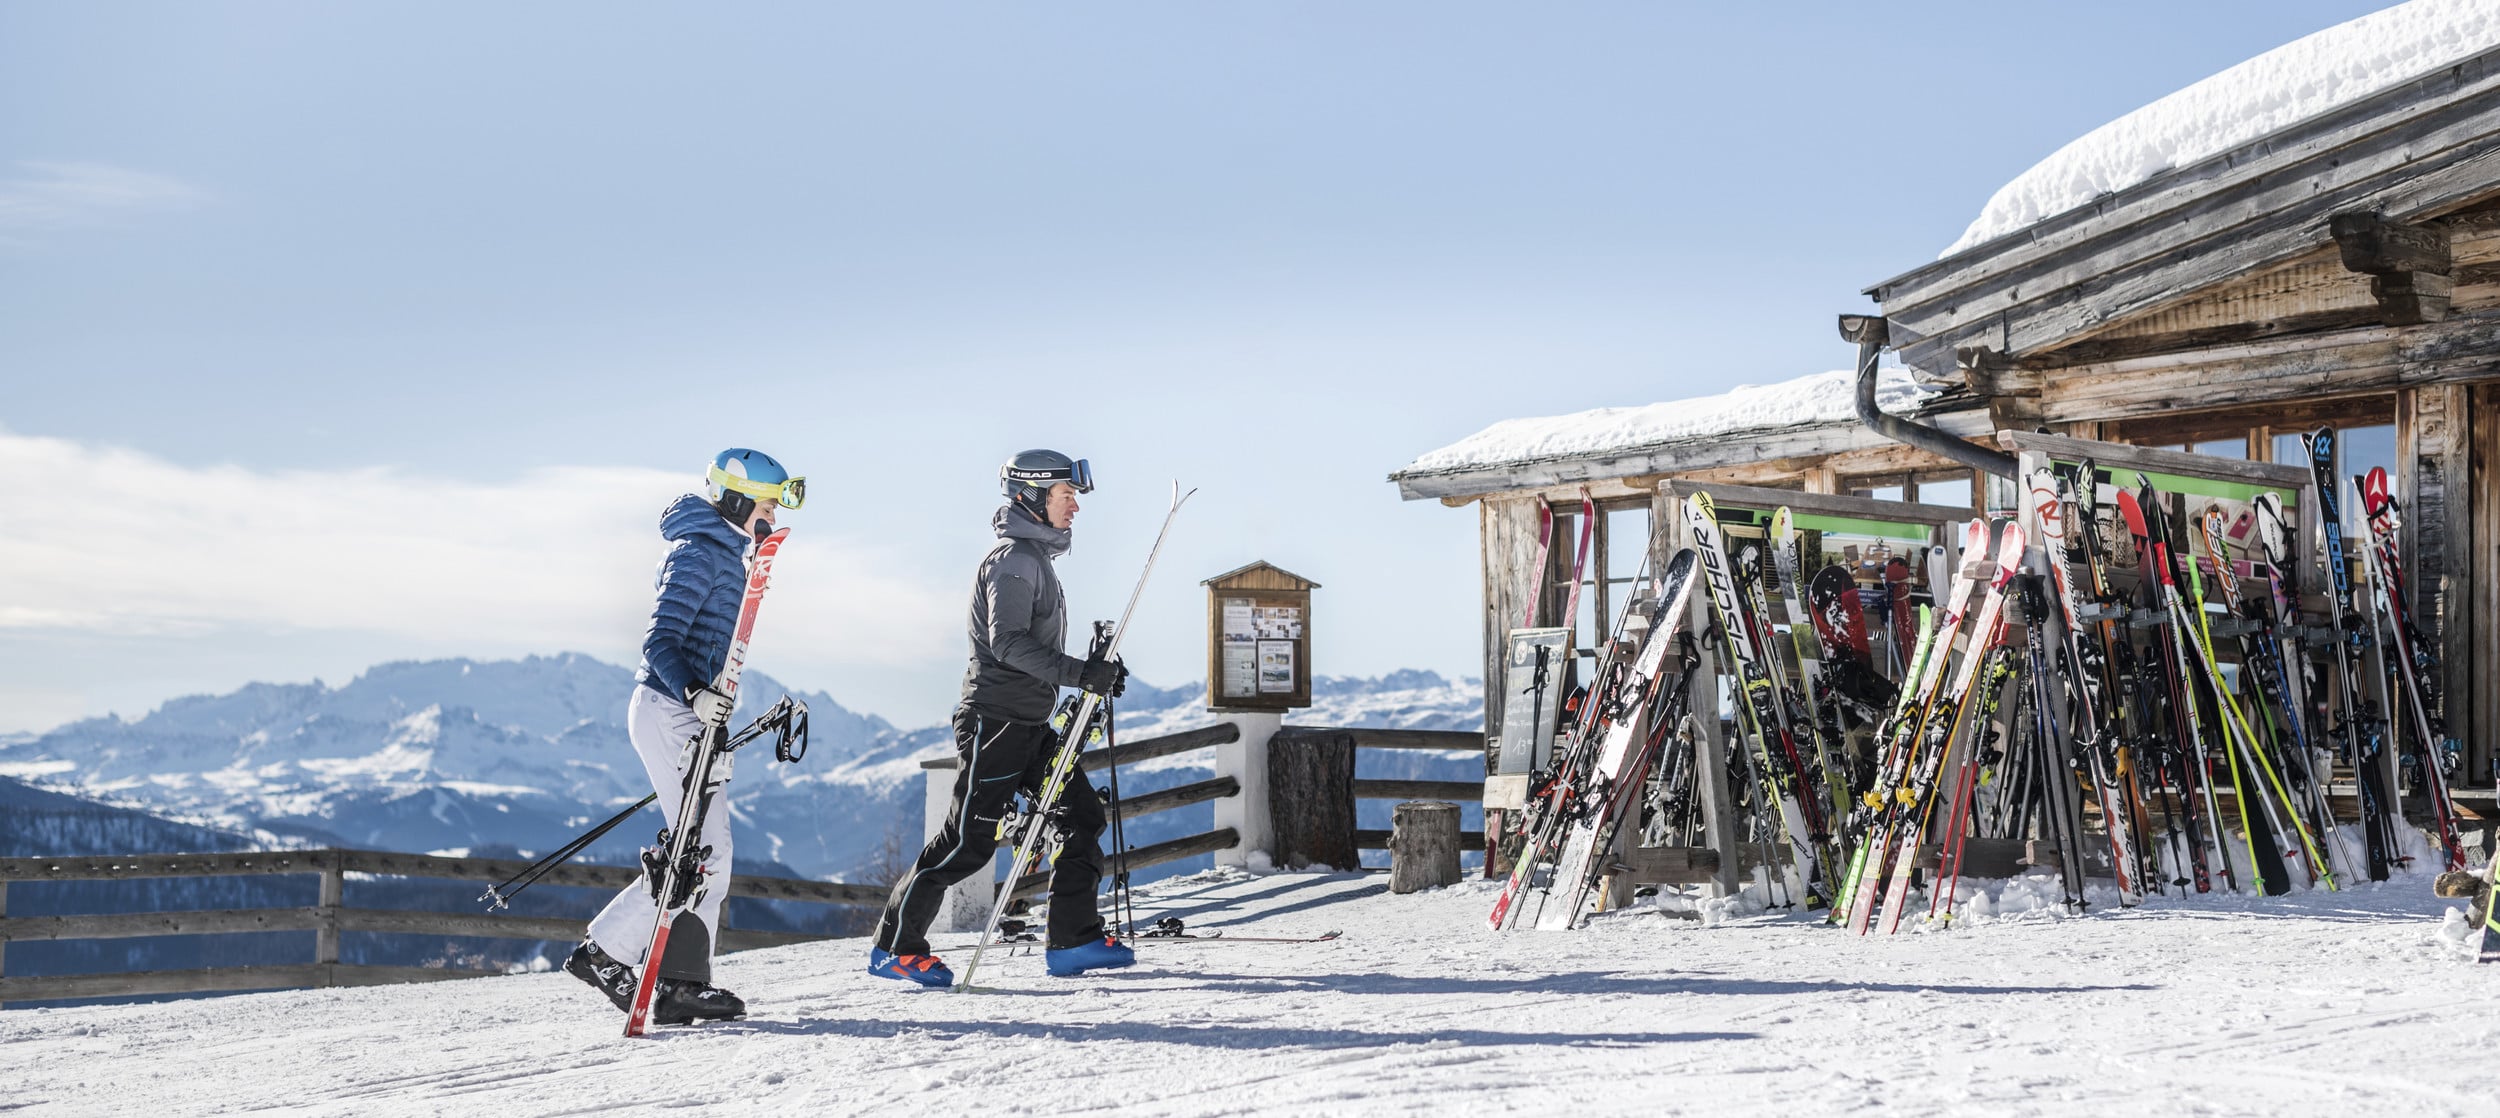 Vacanza sci in Alto Adige: panorami da sogno e spasso in baita